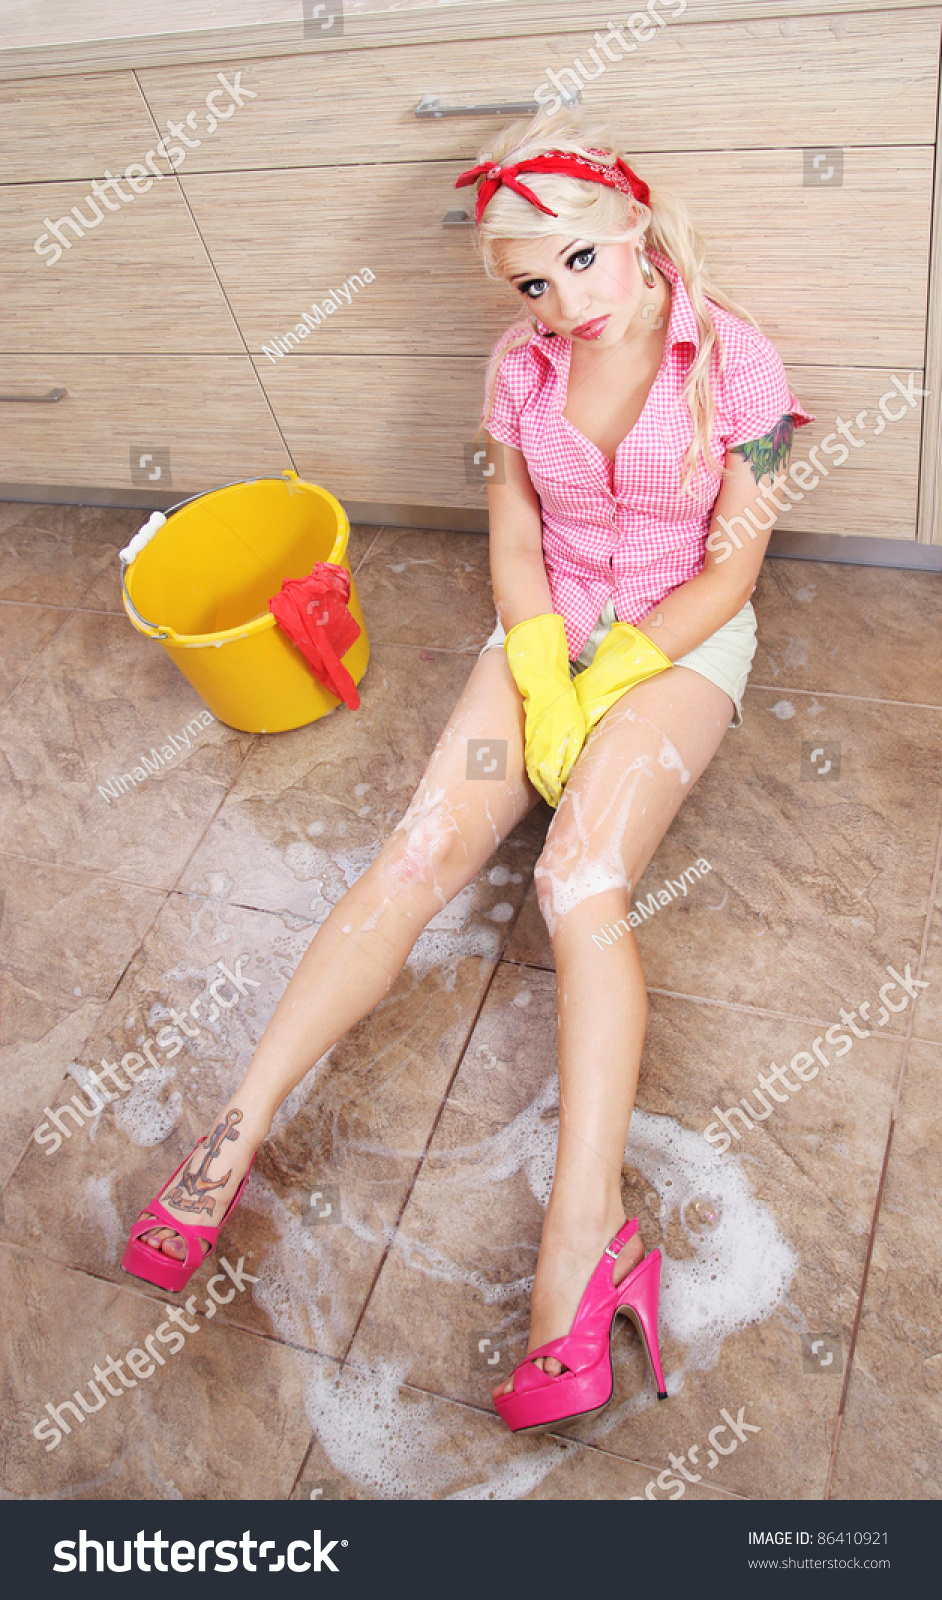 Домработница моет пол в нижнем белье фото